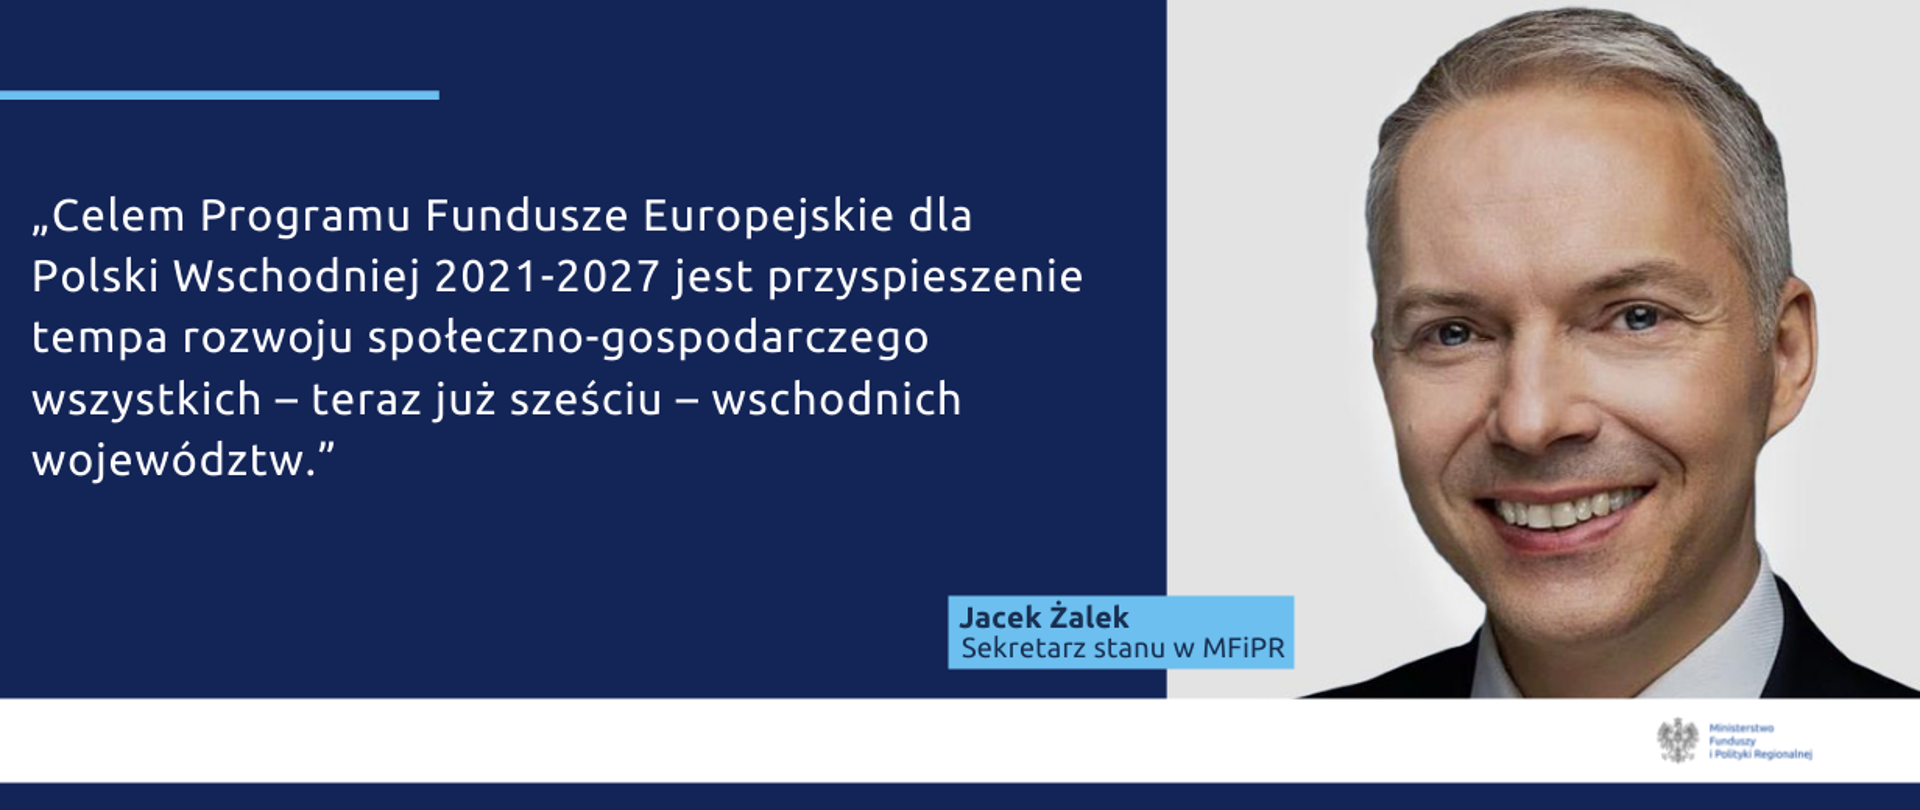 Na grafice napis: "Celem Programu Fundusze Europejskie dla Polski Wschodniej 2021-2027 jest przyspieszenie tempa rozwoju społeczno-gospodarczego wszystkich – teraz już sześciu – wschodnich województw." Po prawej zdjęcie wiceministra Jacka Żalka.